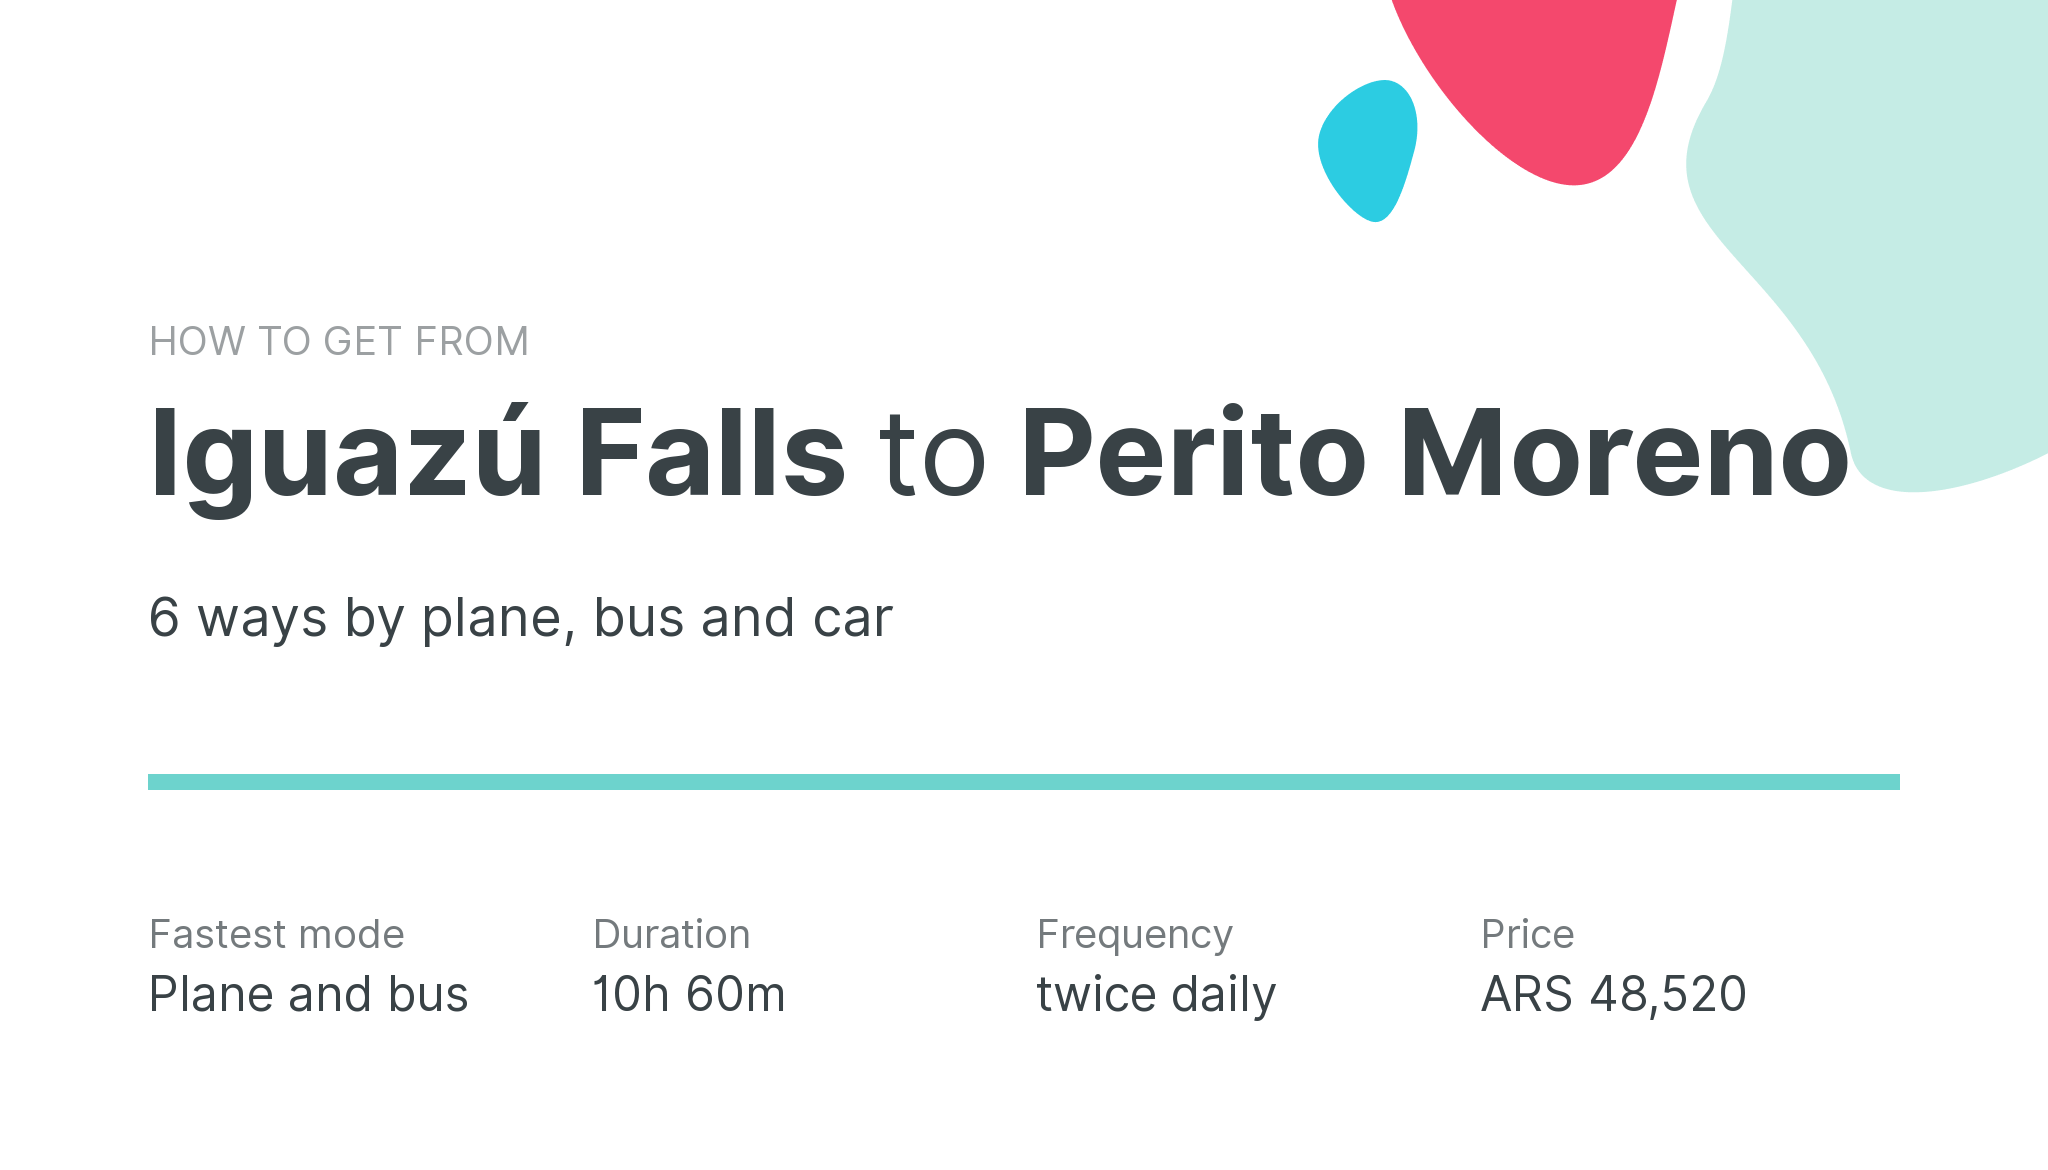 How do I get from Iguazú Falls to Perito Moreno